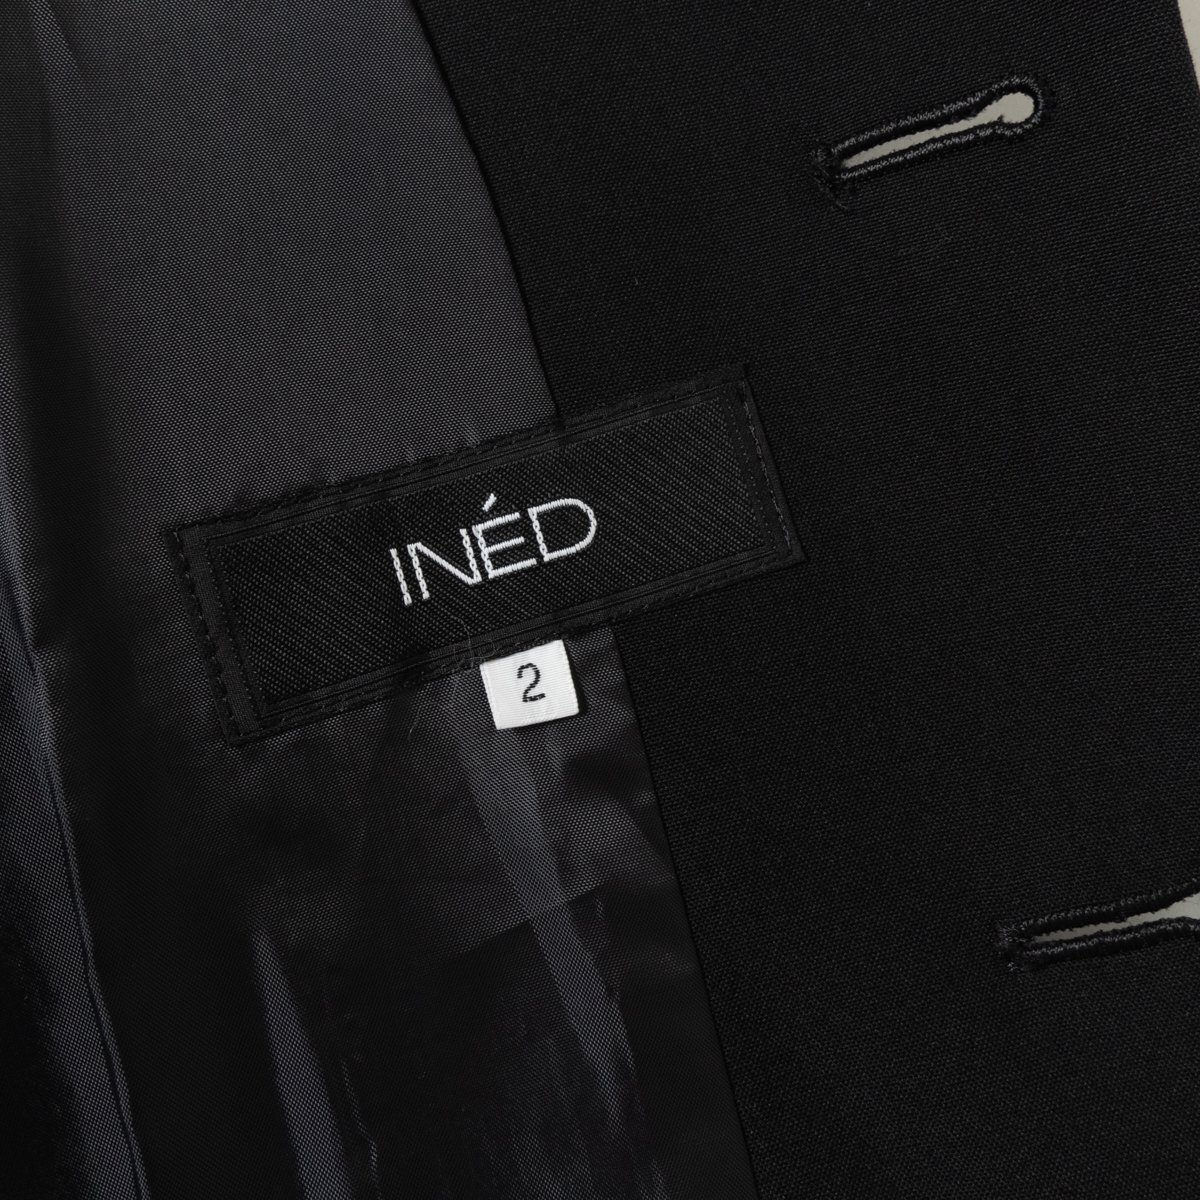 INED イネド セットアップ スーツ ジャケット パンツ 上着 ボトムス 無地 肩パッド入り 2 ウール100% ブラック 黒 綺麗め フォーマル_画像3